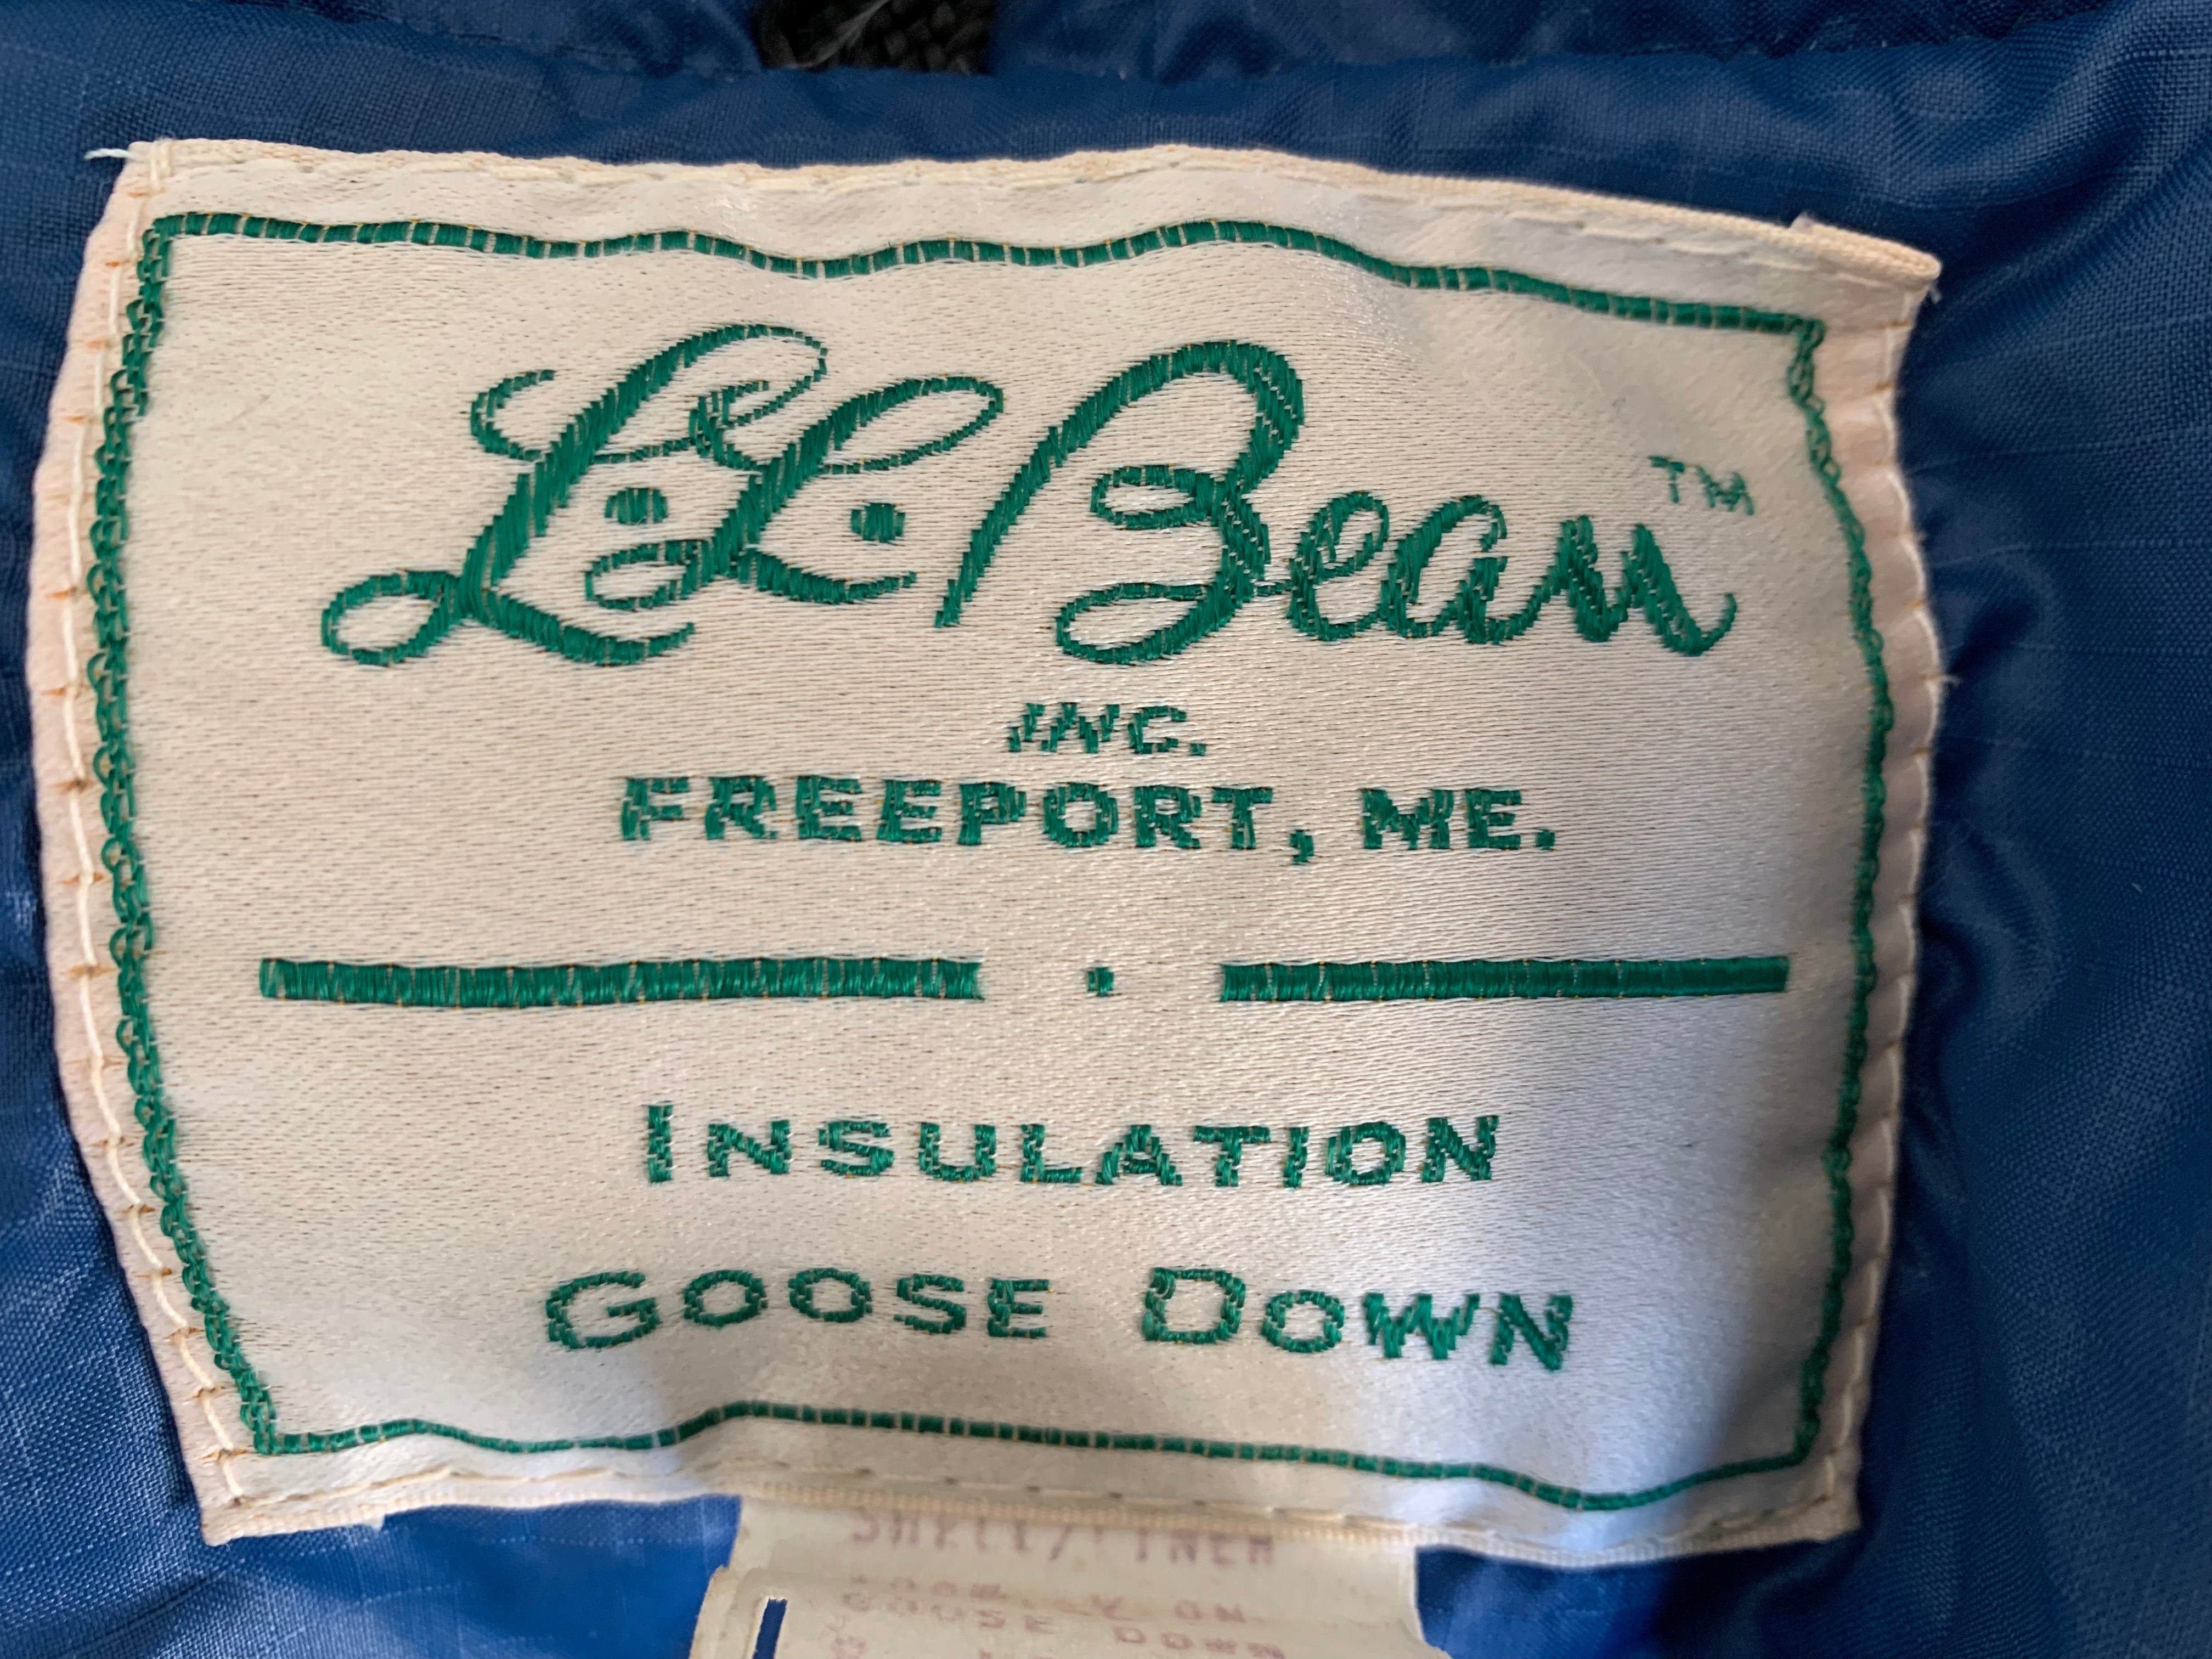 L.L. Bean Blue Vintage Down Vest, M